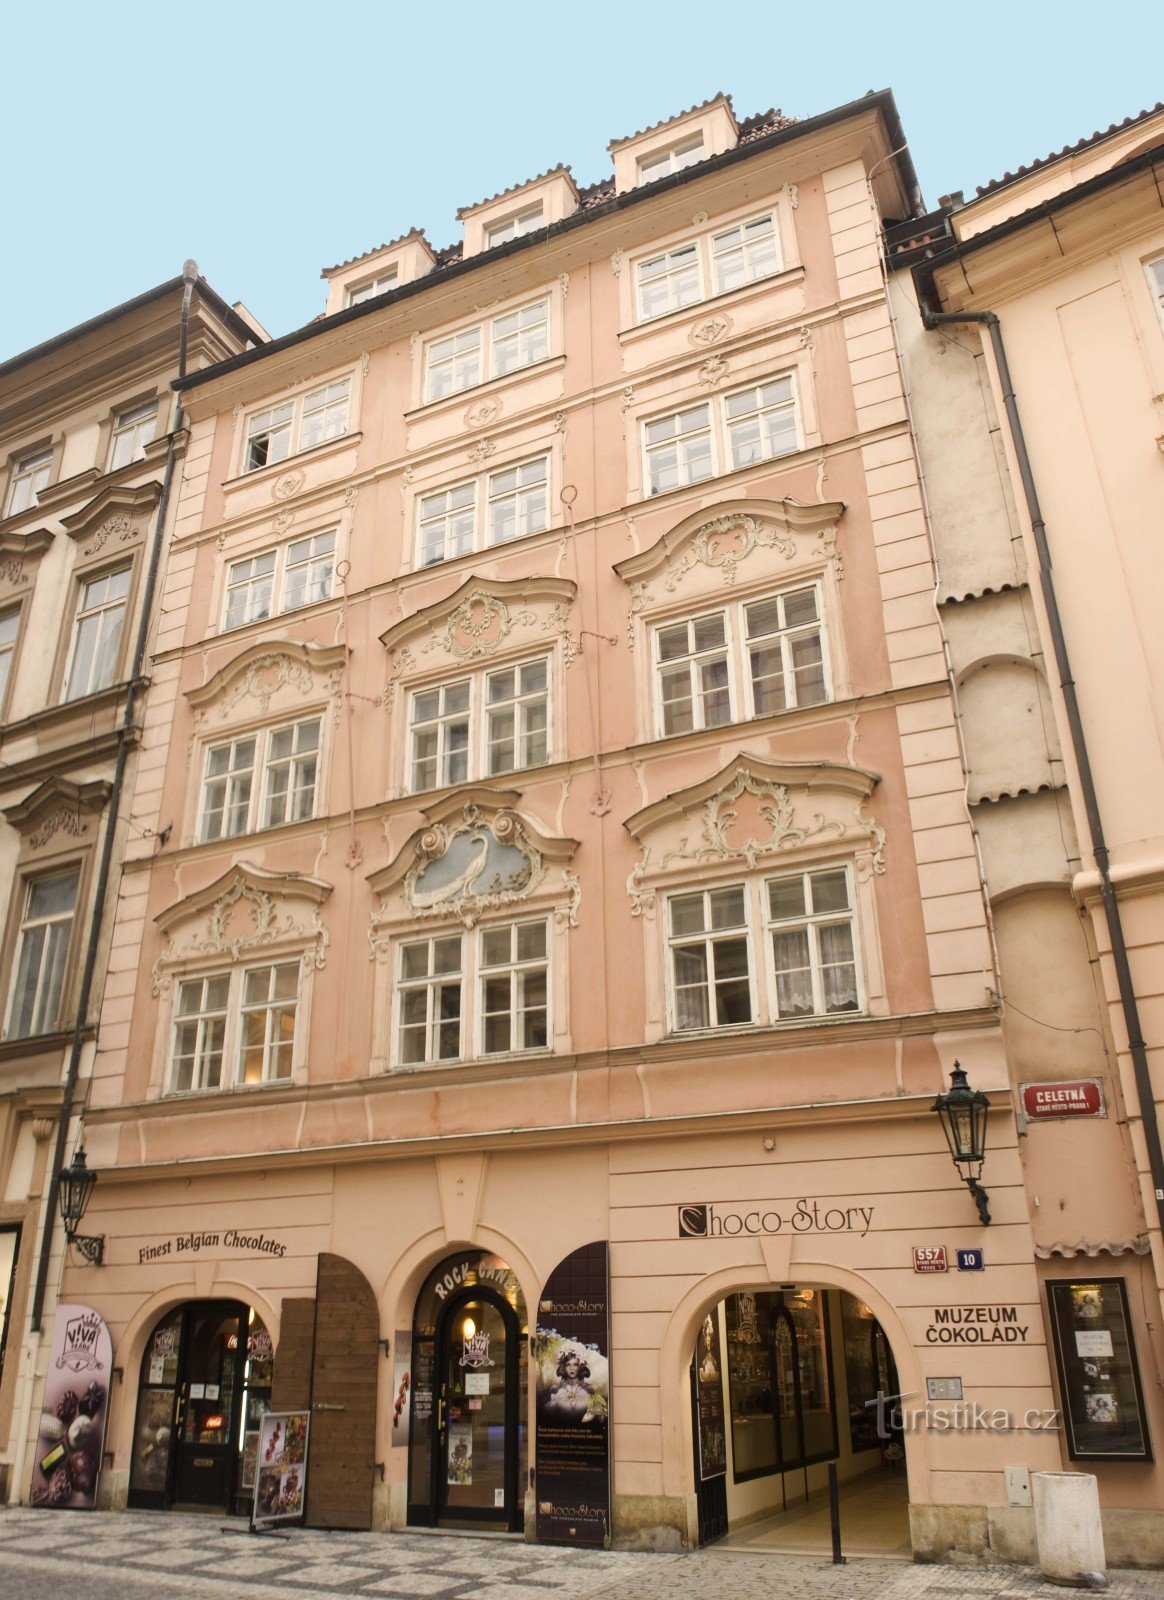 Museo Choco-Story: una experiencia de chocolate en el centro de Praga